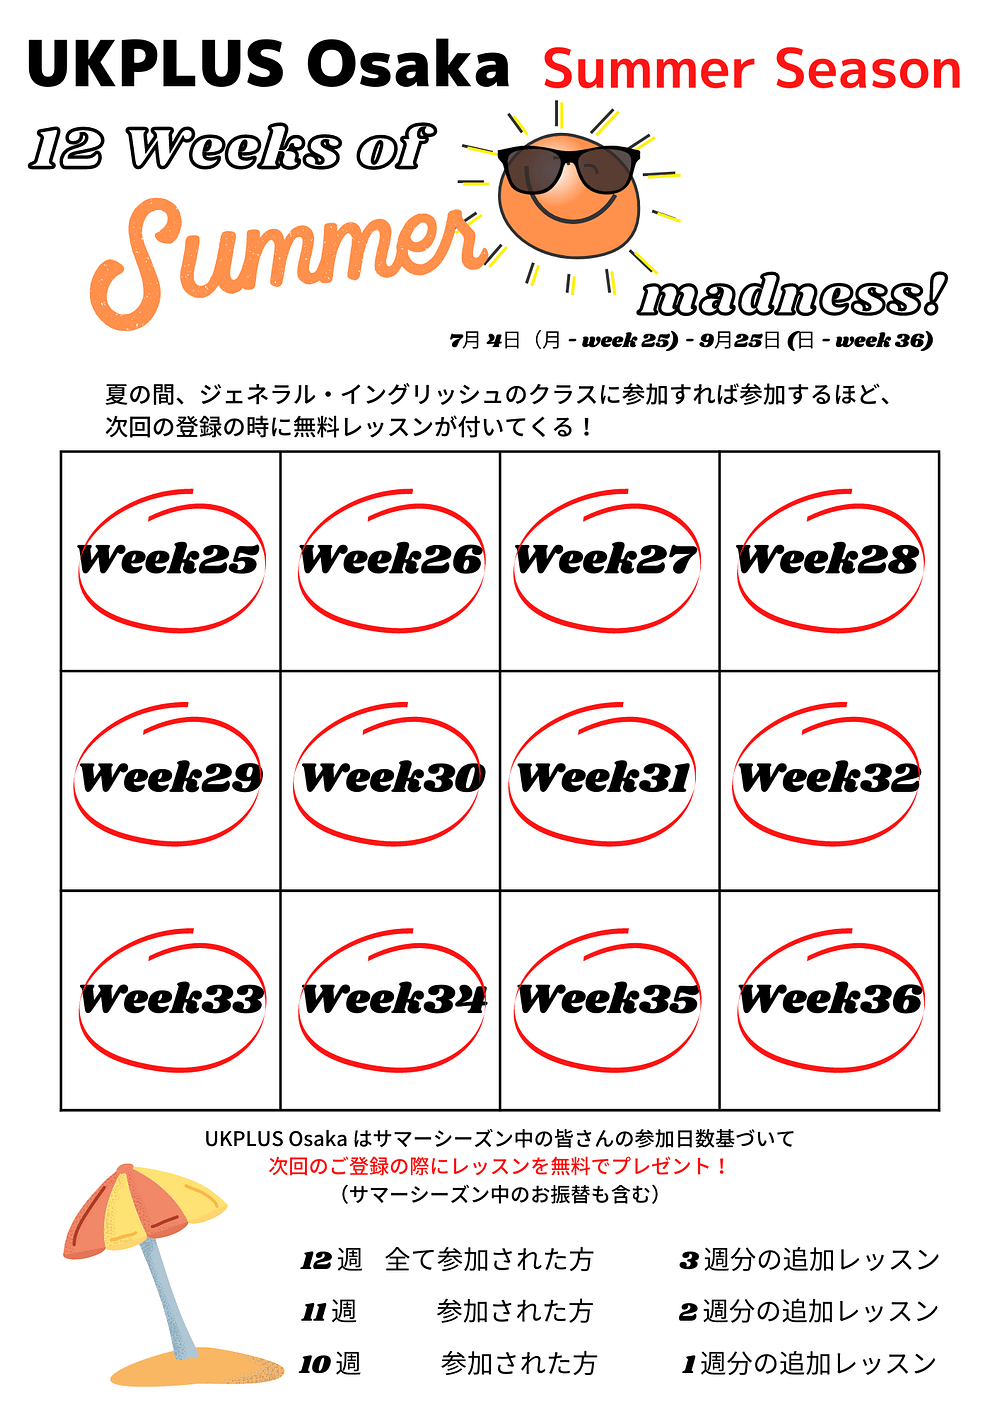 UKPLUS Osaka Summer season (1)